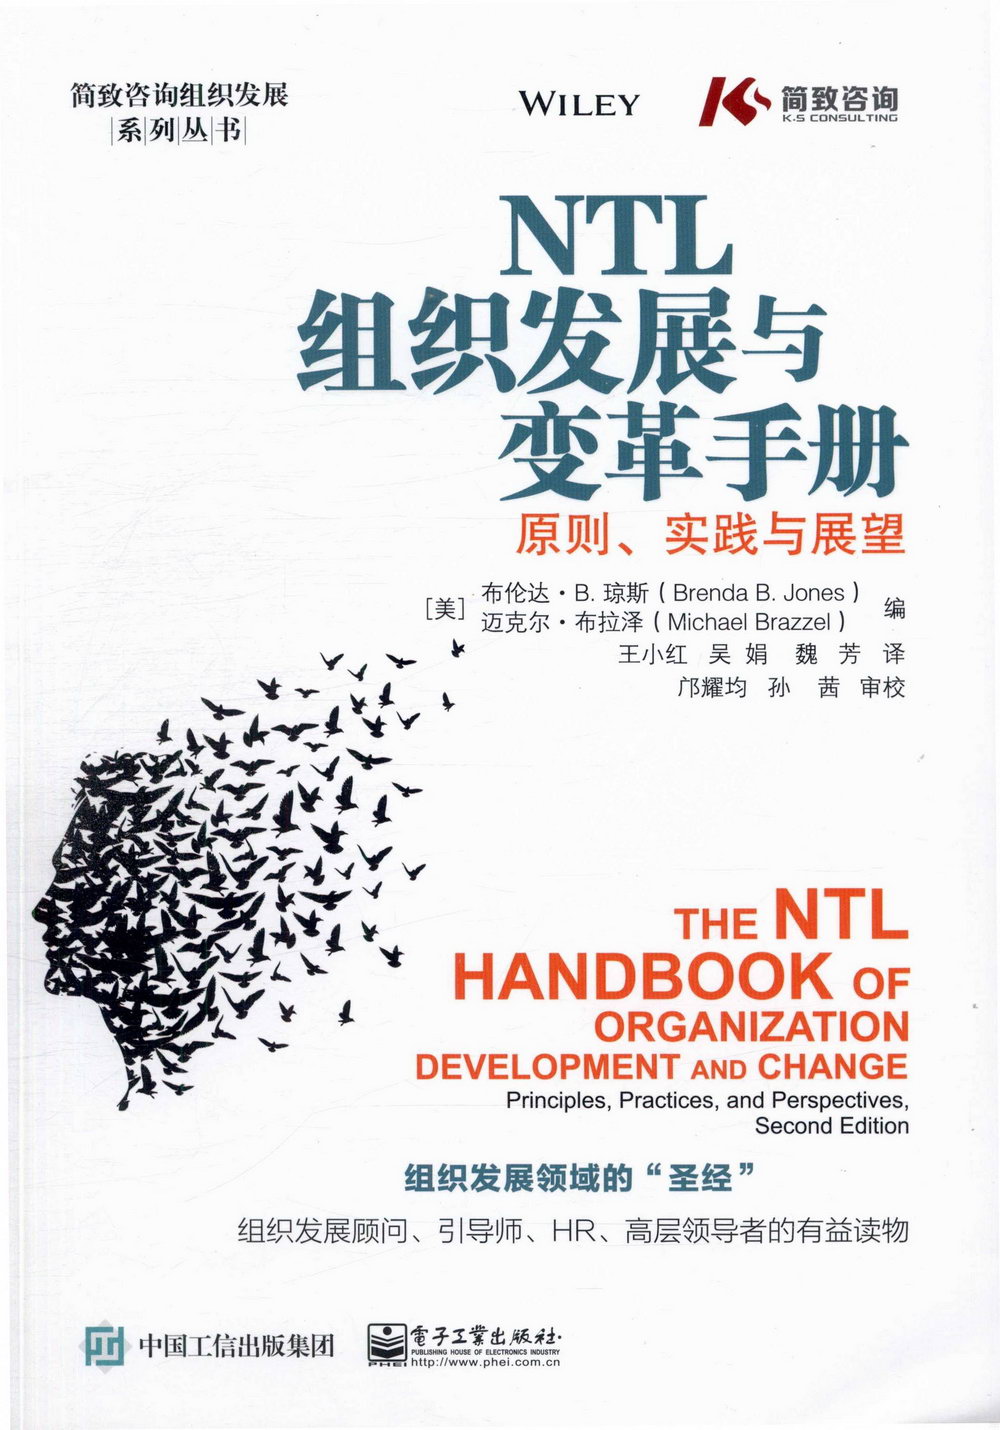 NTL組織發展與變革手冊：原則、實踐與展望